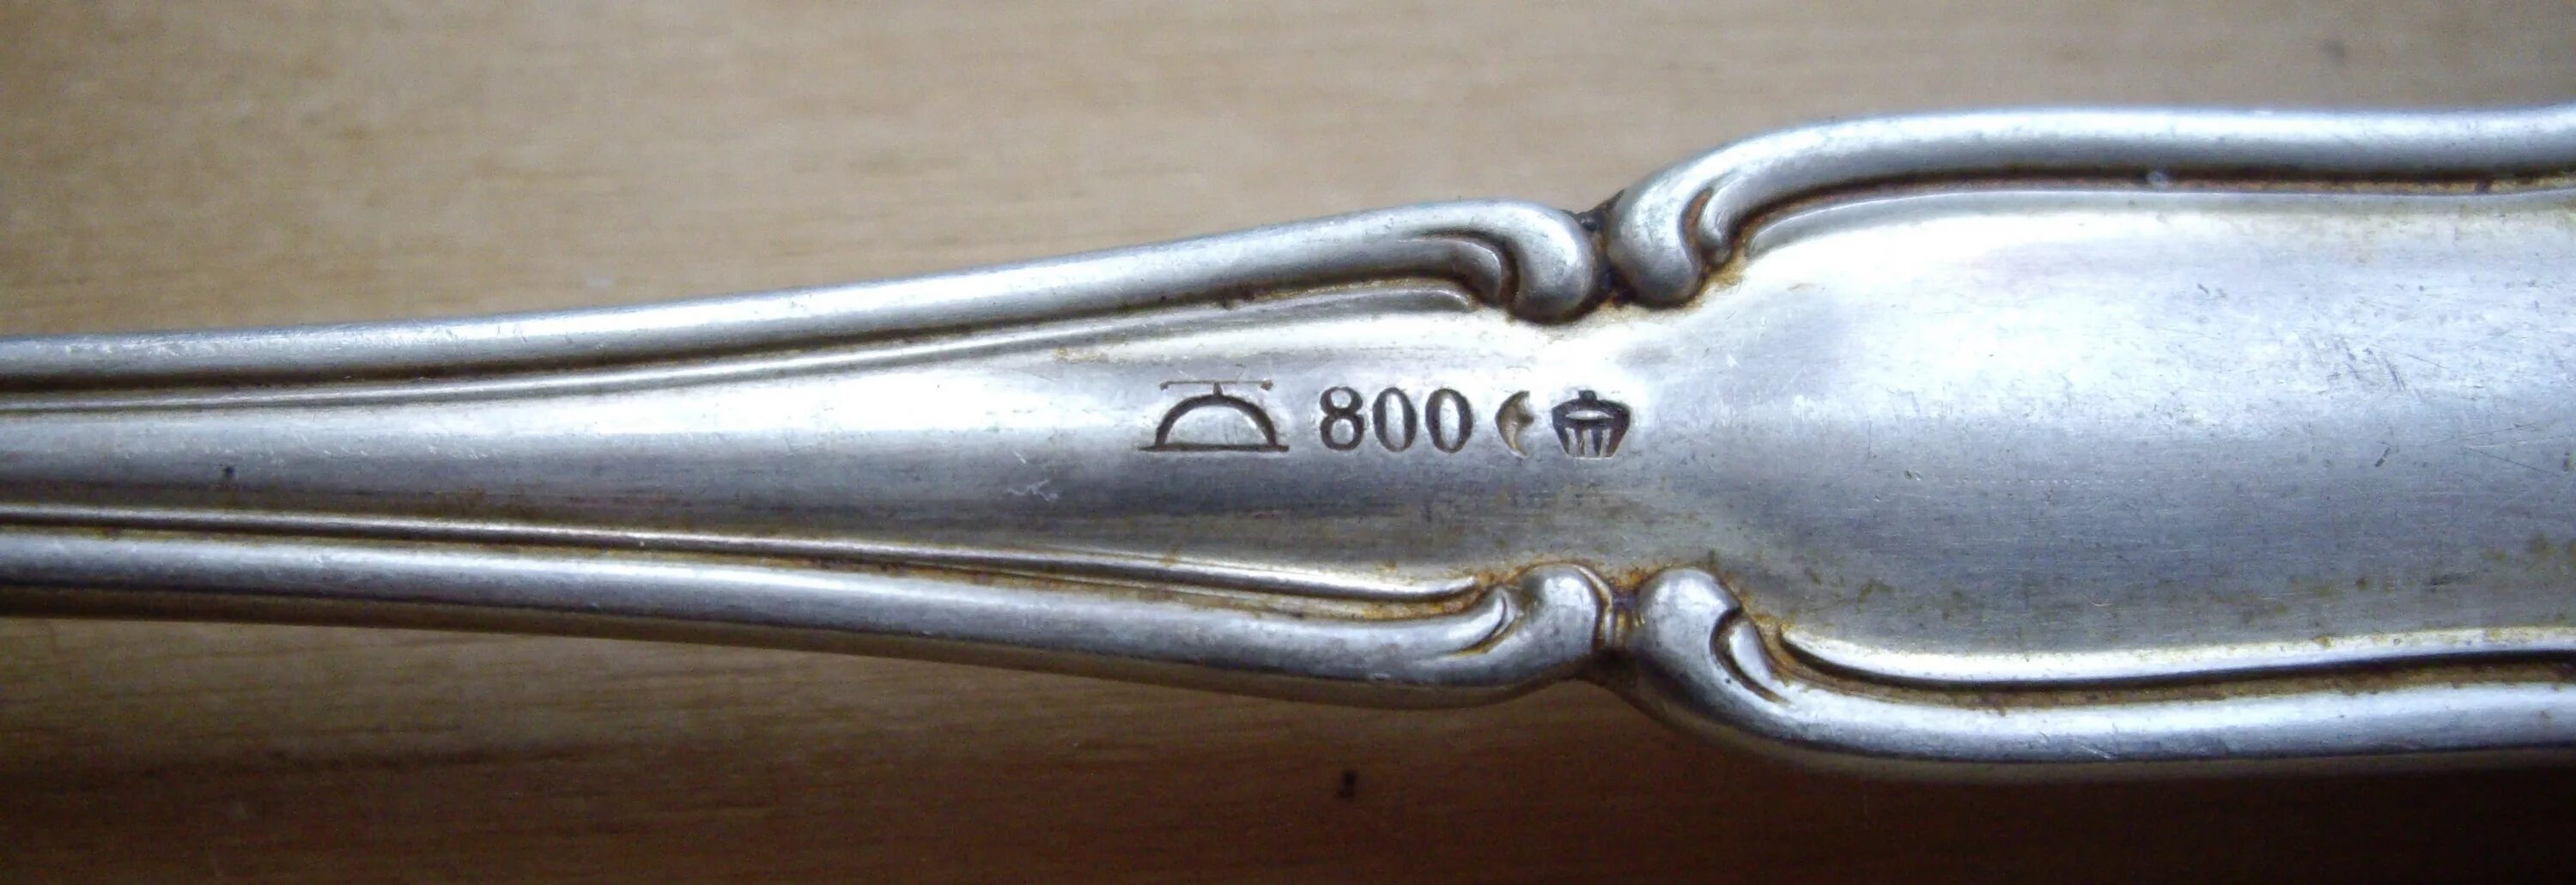 Столовое серебро клеймо 800 ARG. 800 Проба серебра клейма Германия. Клеймо Zimmermann на серебре 800 пробы. Ложка серебро 800 пробы клеймо.